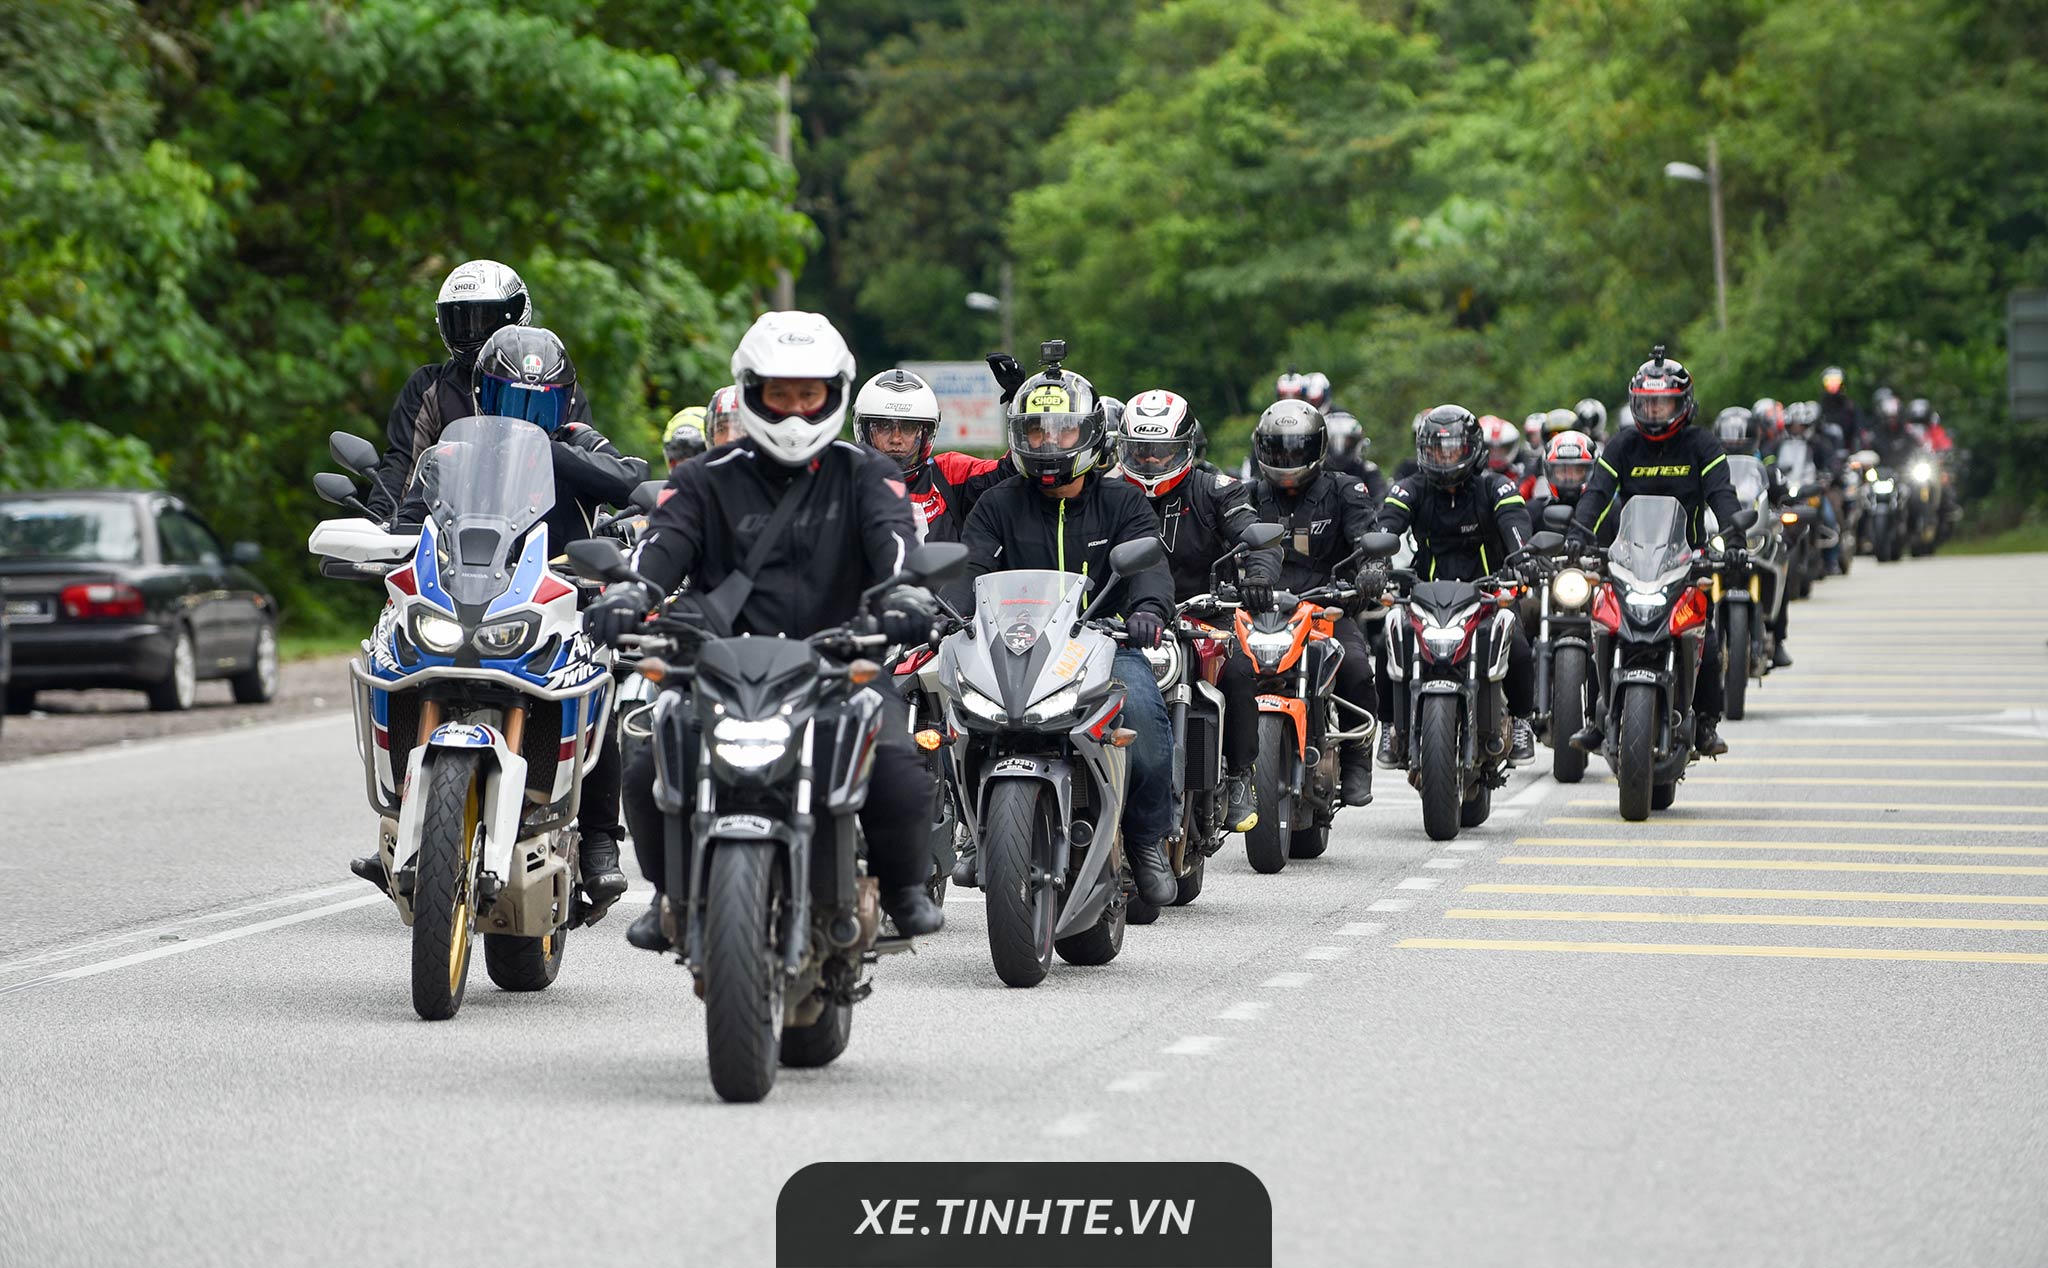 Ngày mai bắt đầu Honda Biker Day 2019, offline gần 200 xe PKL, lái thử và ra mắt xe mới ở Phan Thiết